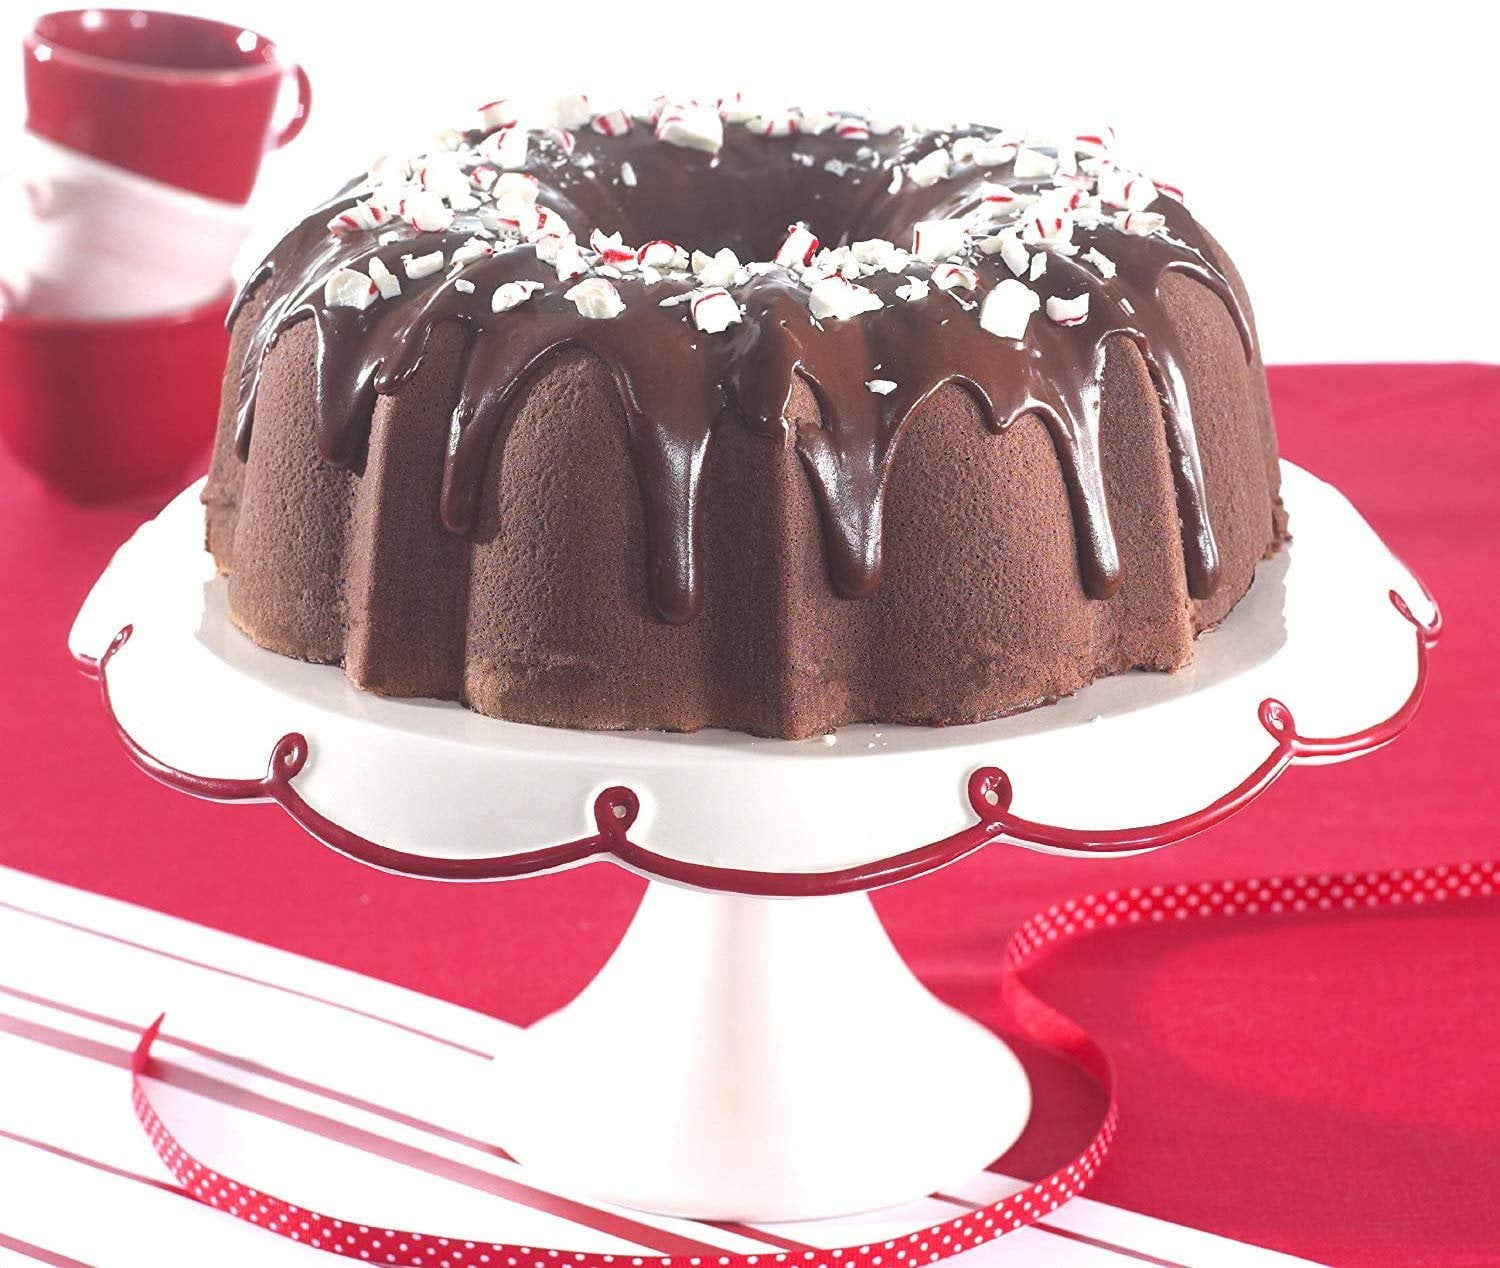 Customizable Assortment of 12 Bundtinis®(Cupcake Sized Bundt Cakes